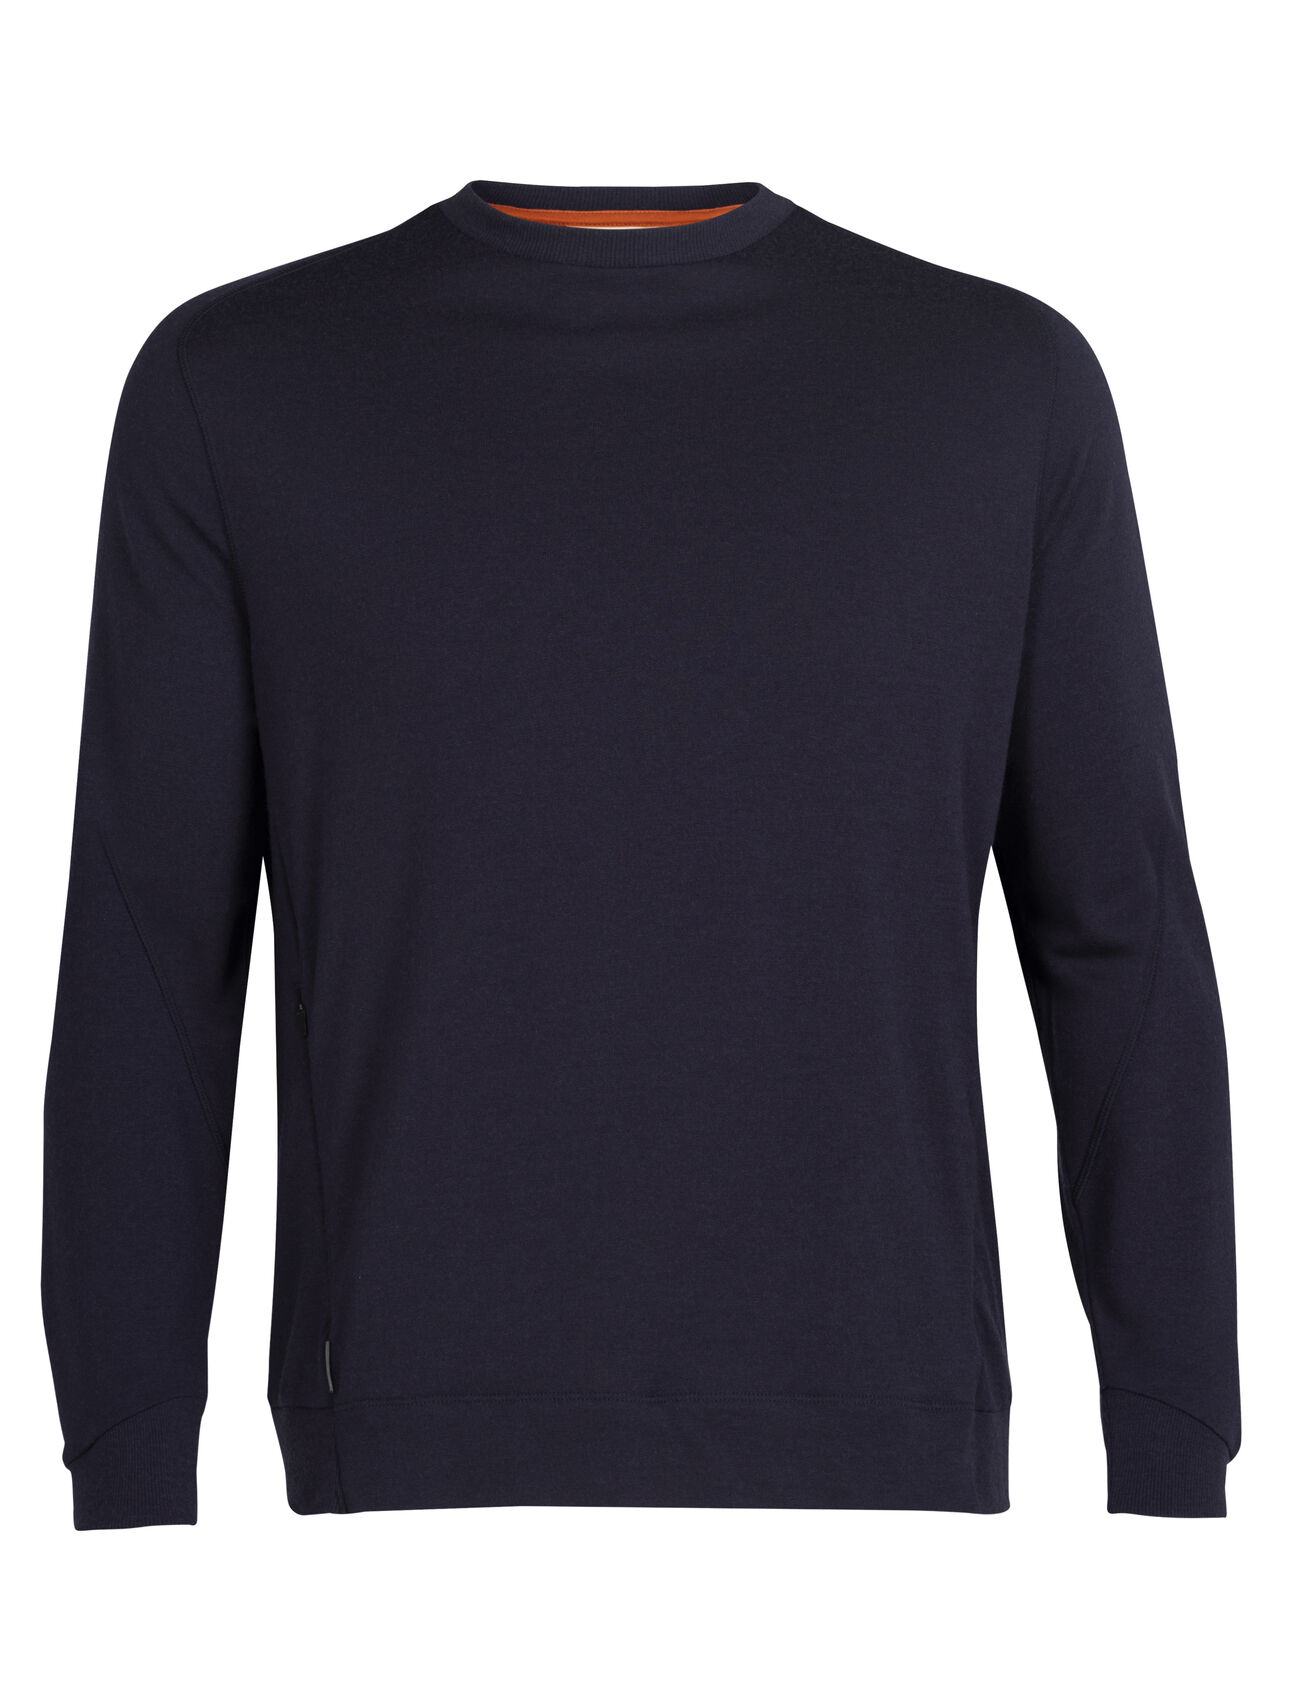 Mens Merino Sweatshirt A classic crew-neck sweatshirt made with 100% merino wool Terry fabric, the Merino Sweatshirt maximizes comfort with refined modern details.